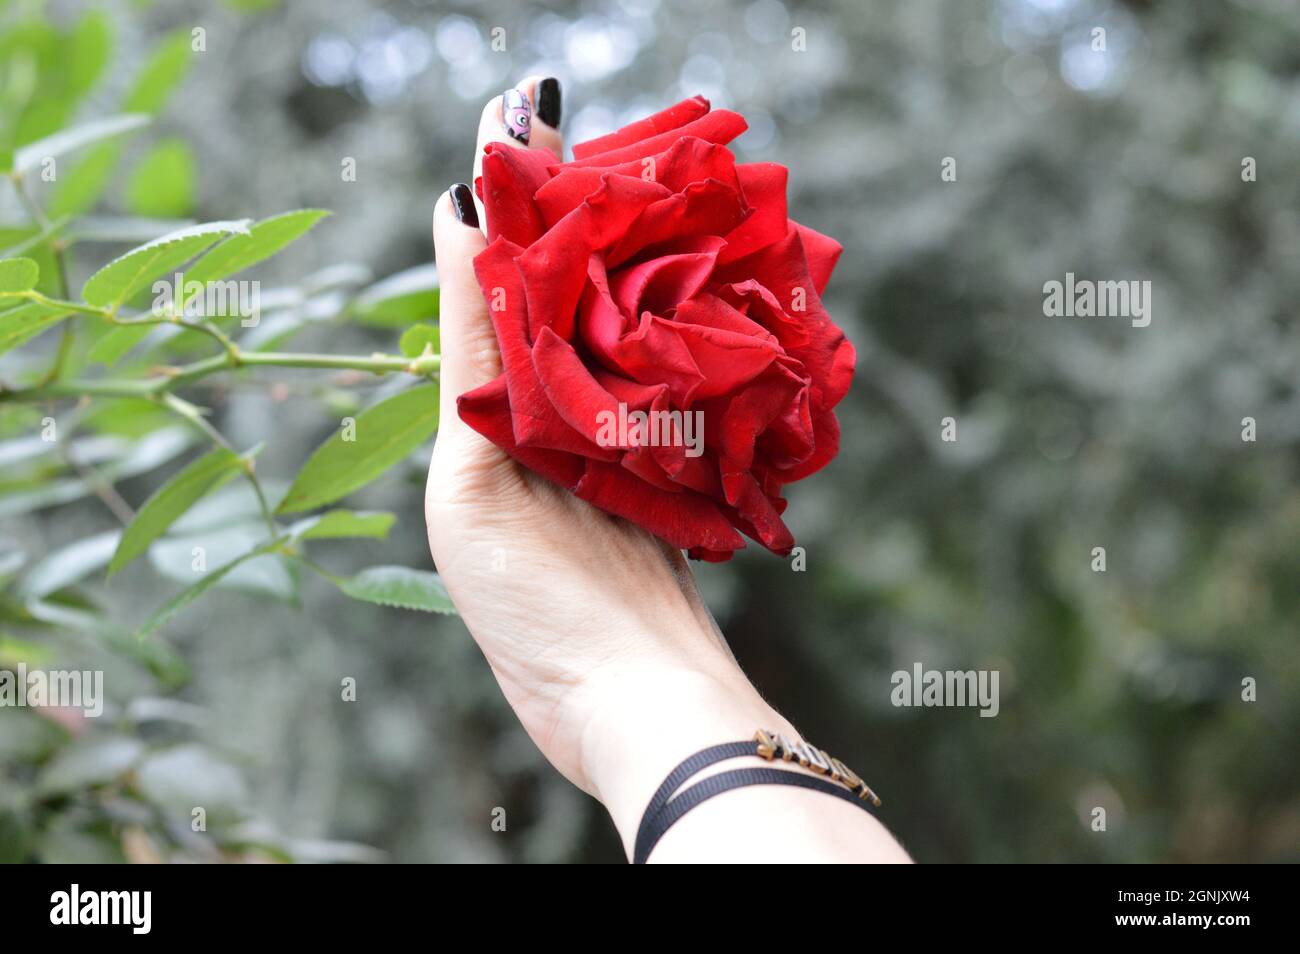 Bella rosa rossa in piena fioritura sulla mano di una donna con smalto nero per unghie e braccialetto, presa in giardino dalle baie di Singapore Foto Stock